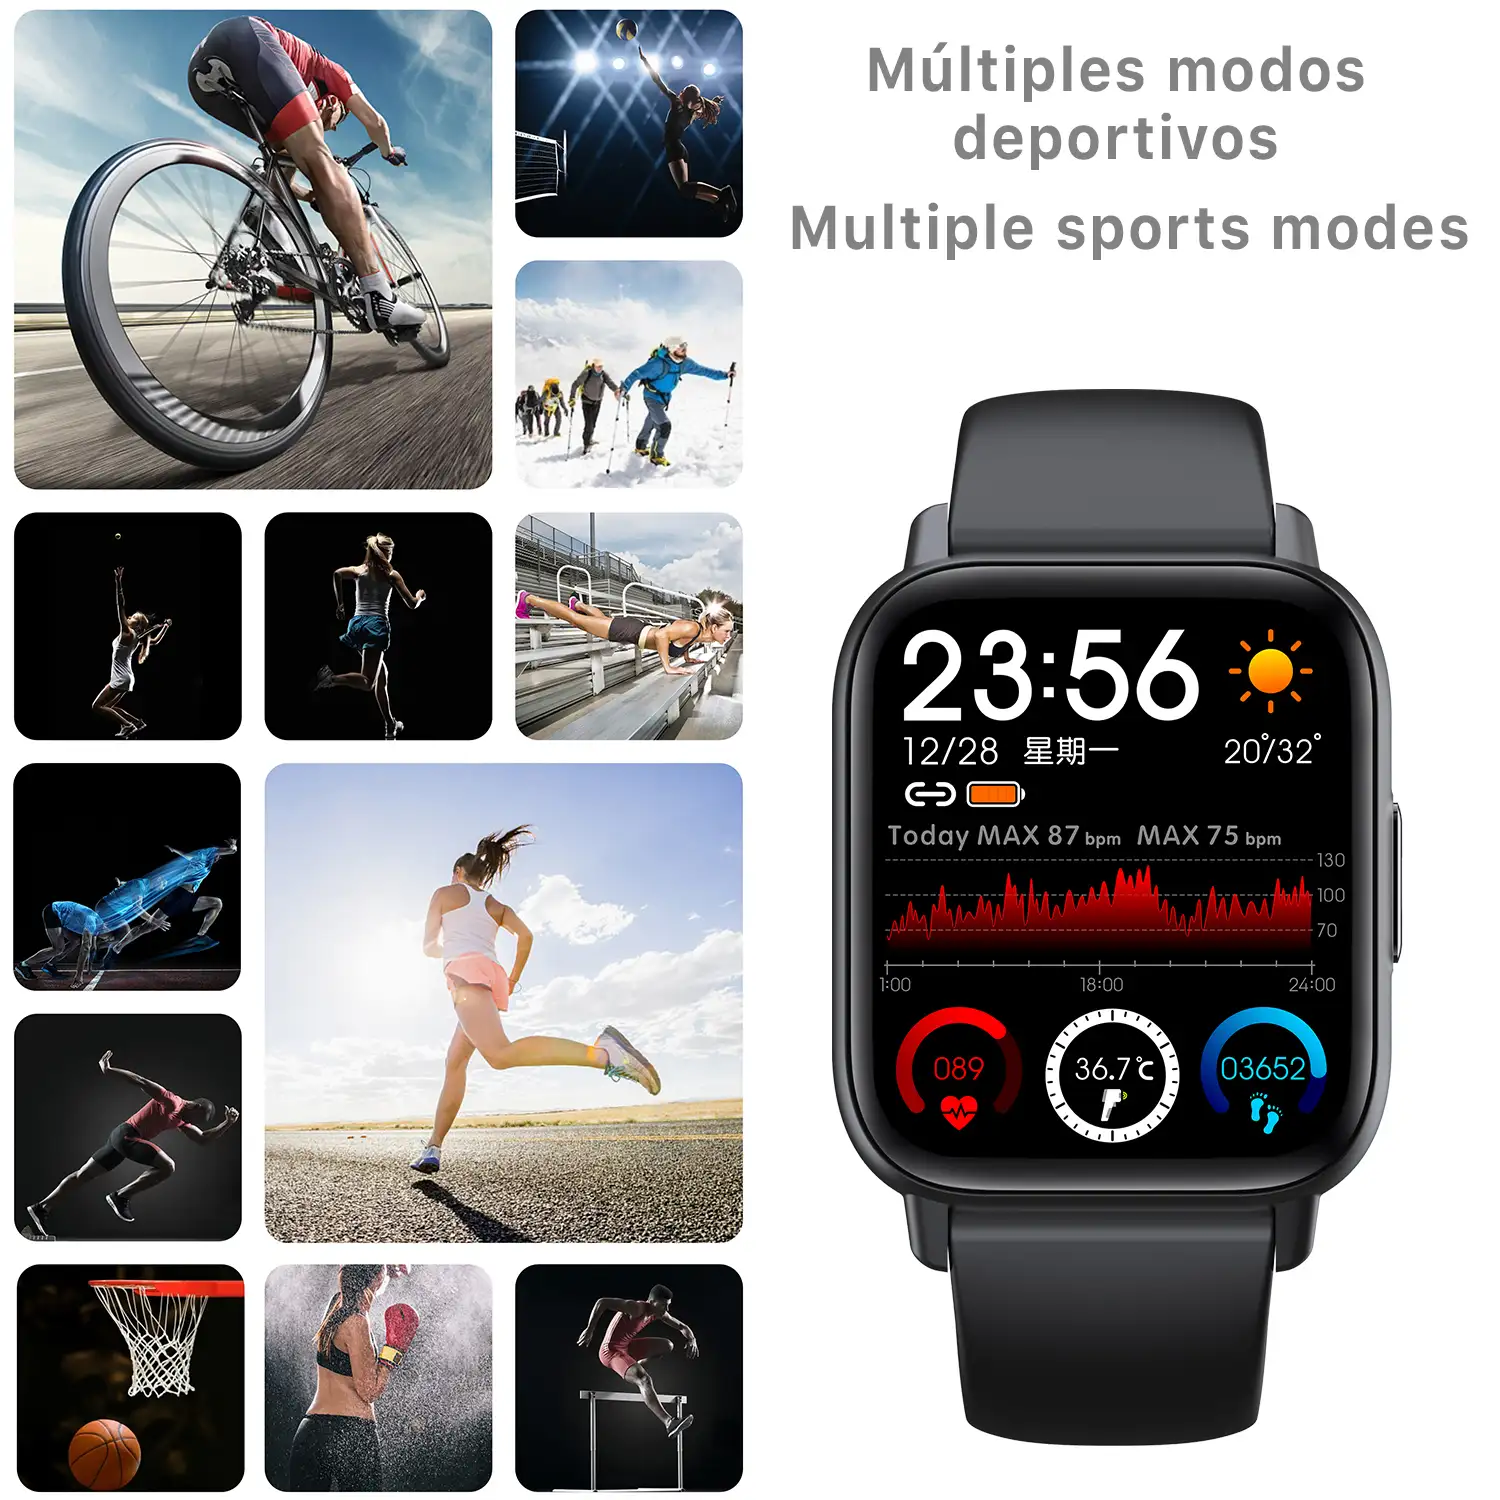 Smartwatch QS16 con termómetro corporal, monitor de tensión y O2. 24 modos deportivos, notificaciones de apps.